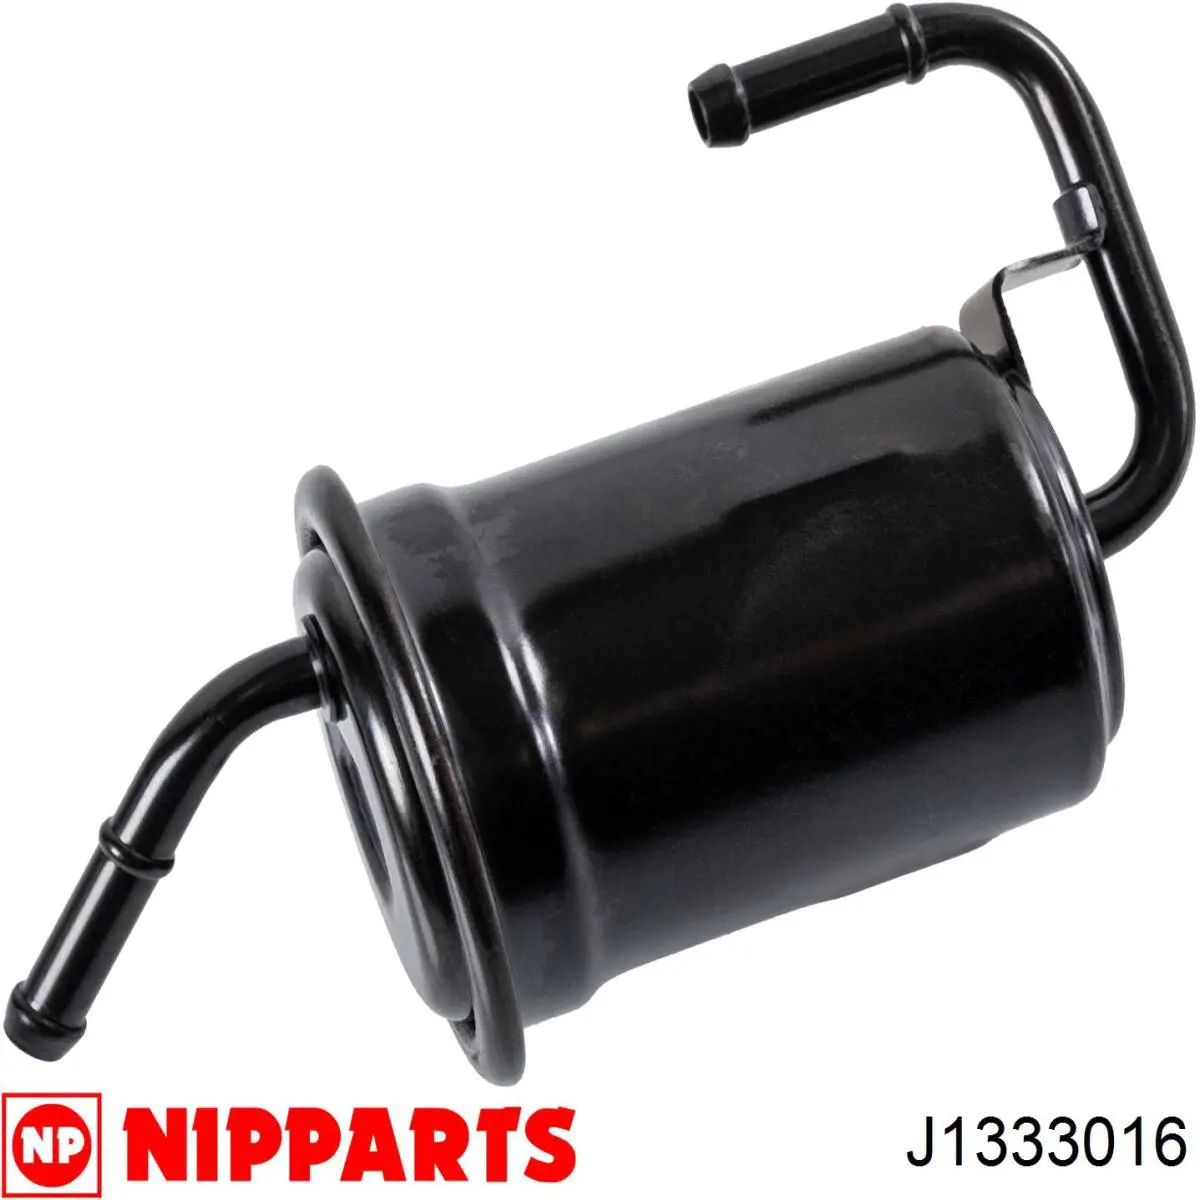 Filtro combustible J1333016 Nipparts